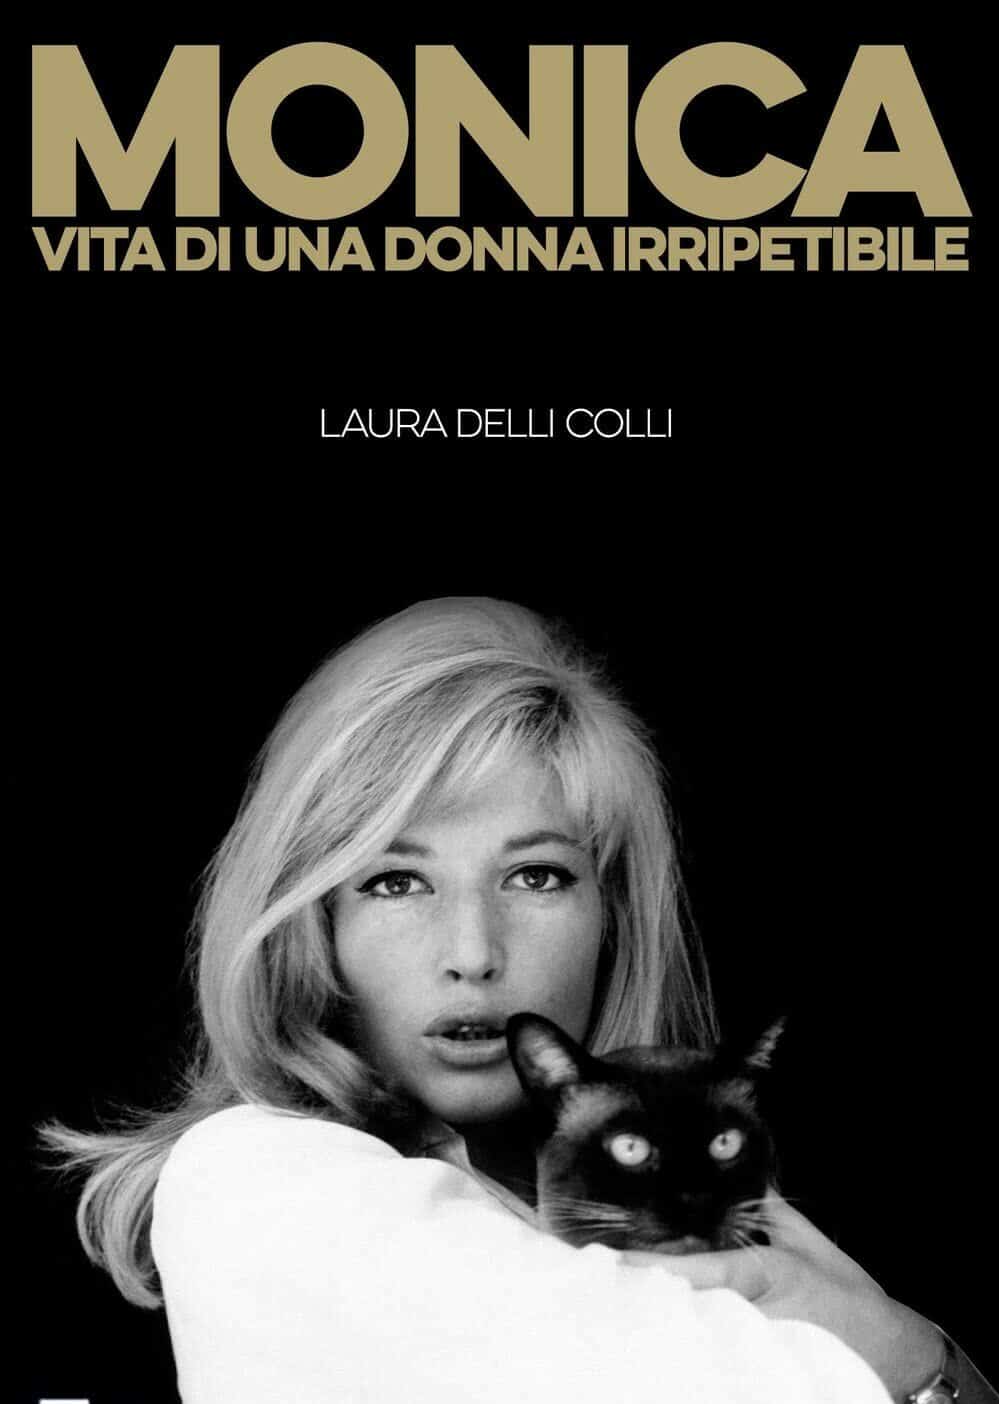 Immagine tratta dalla copertina del libro, Monica. Vita di una donna irripetibile di Laura Delli Colli. Ed. RaiLibri